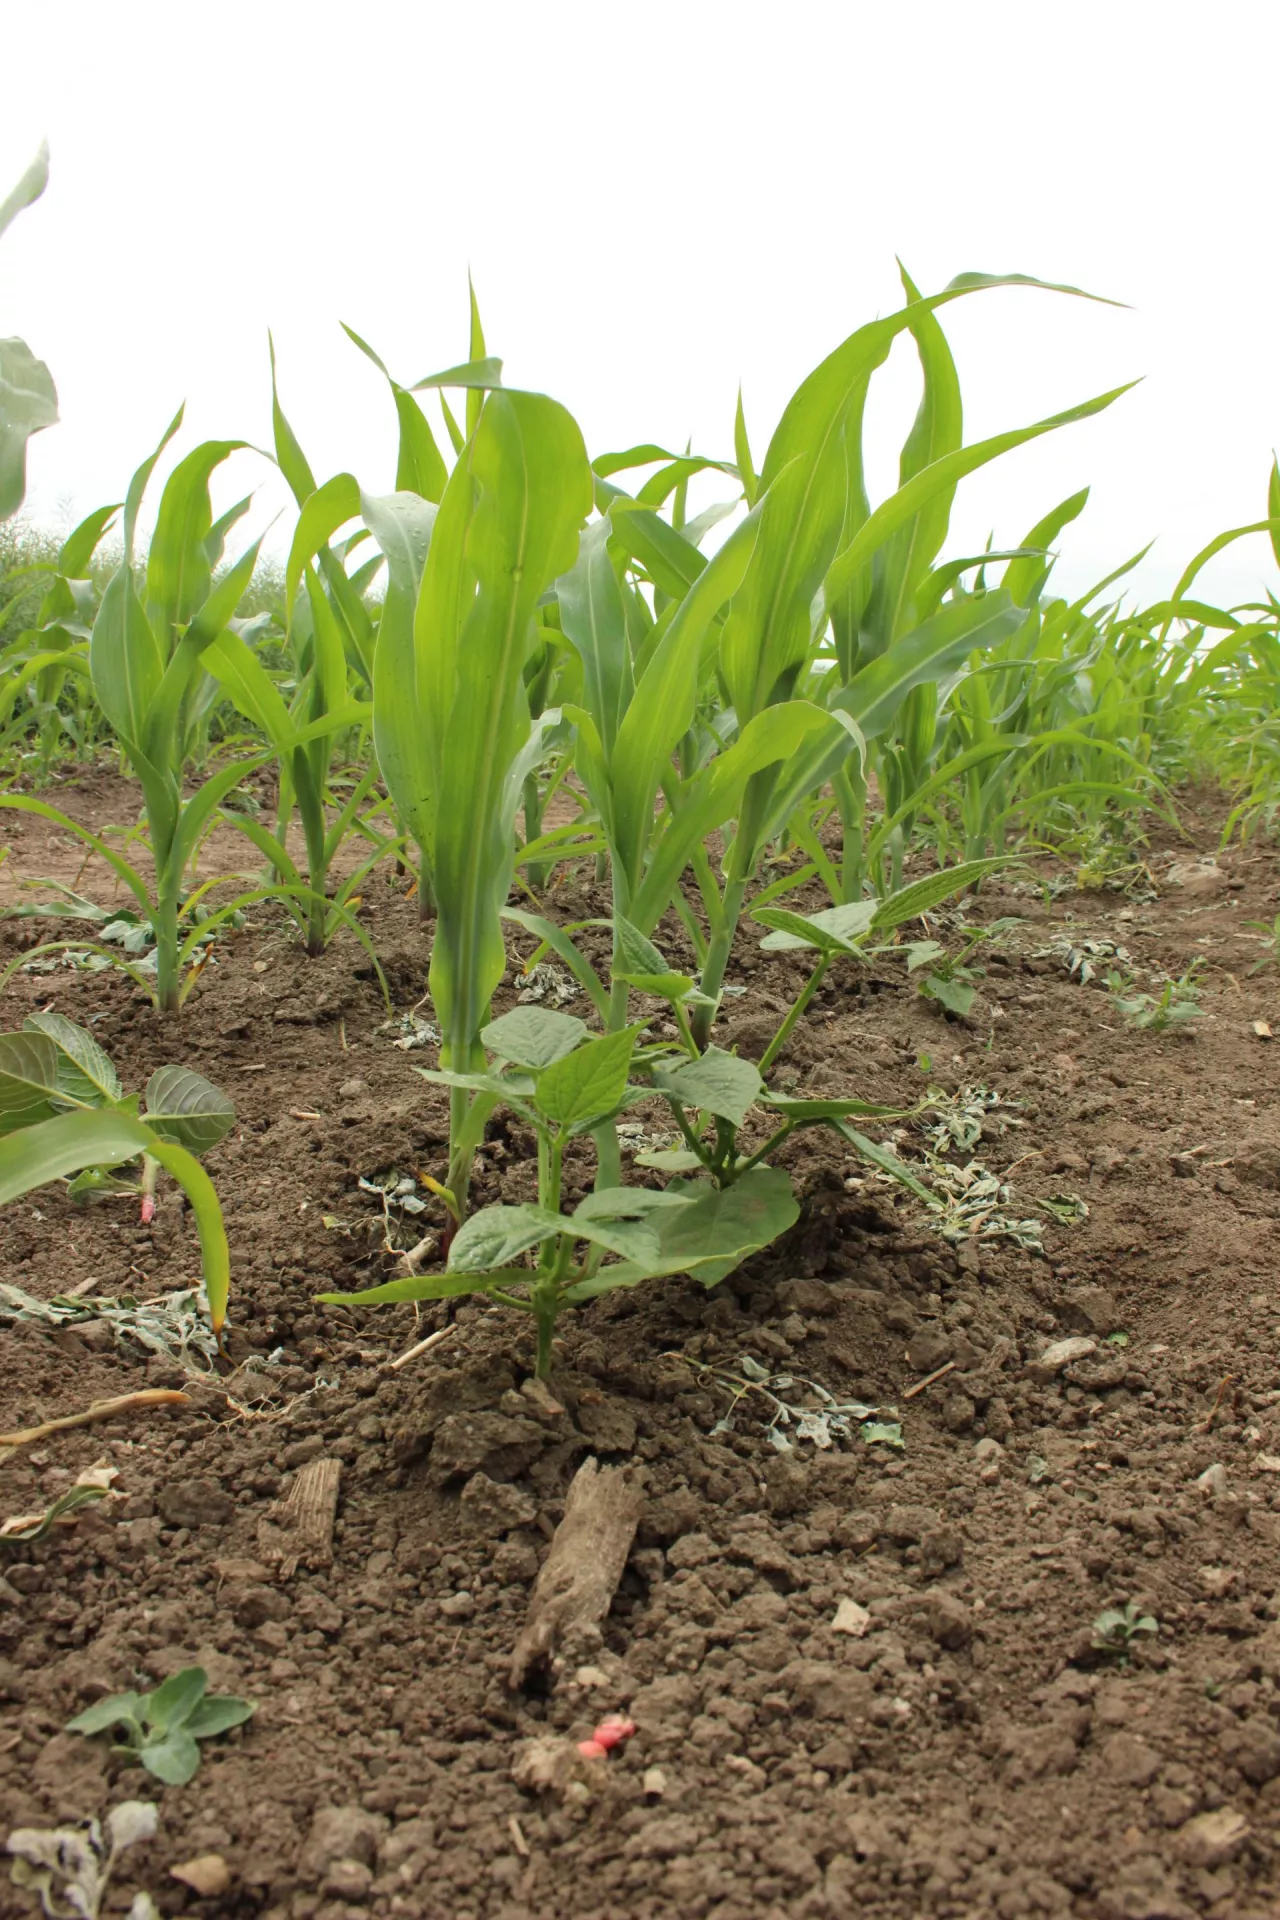 Poletko współrzędowej uprawy kukurydzy z fasolą tyczną pokazywane w 2019 r. na Demo Farmie KWS w Wybranowie